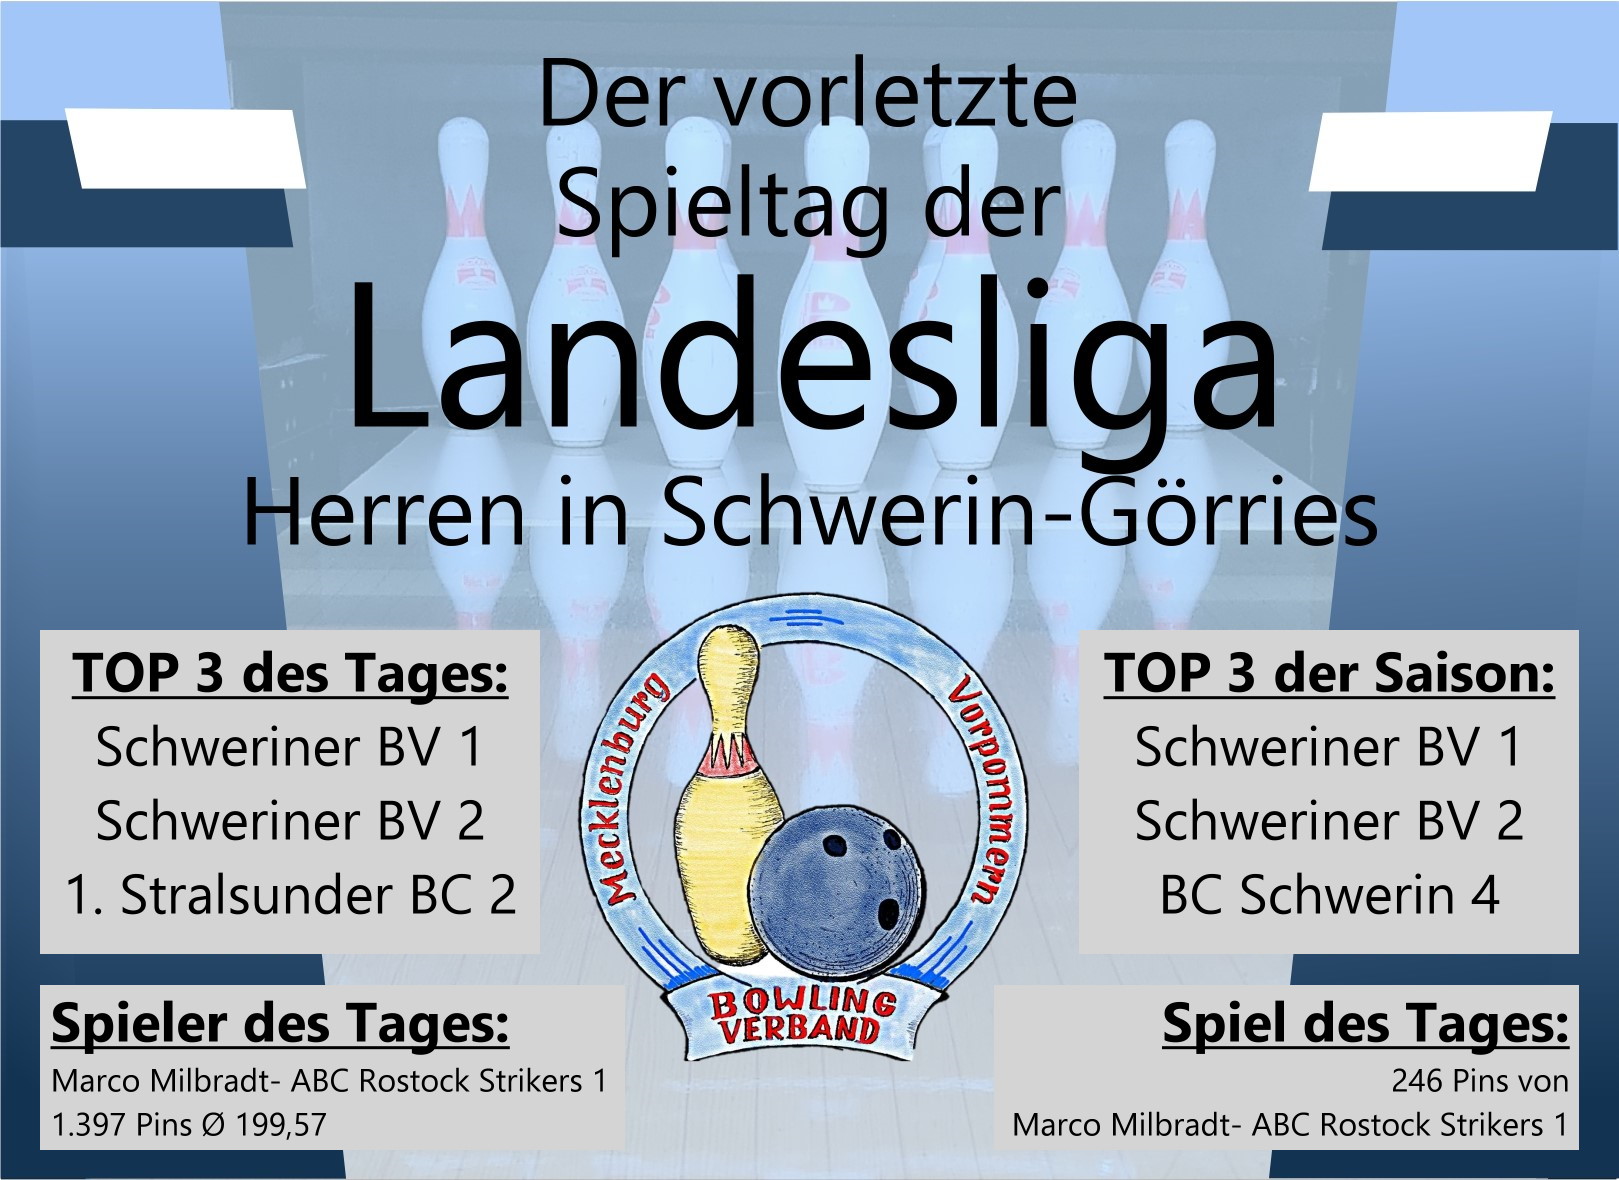 Es geht um den Aufstieg in die Oberliga: Lässt es sich der Schweriner BV jetzt noch nehmen? Der Vorsprung wird größer. Auch erneut viele 200er-Spiele am vorletzten Spieltag der Landesliga Herren.